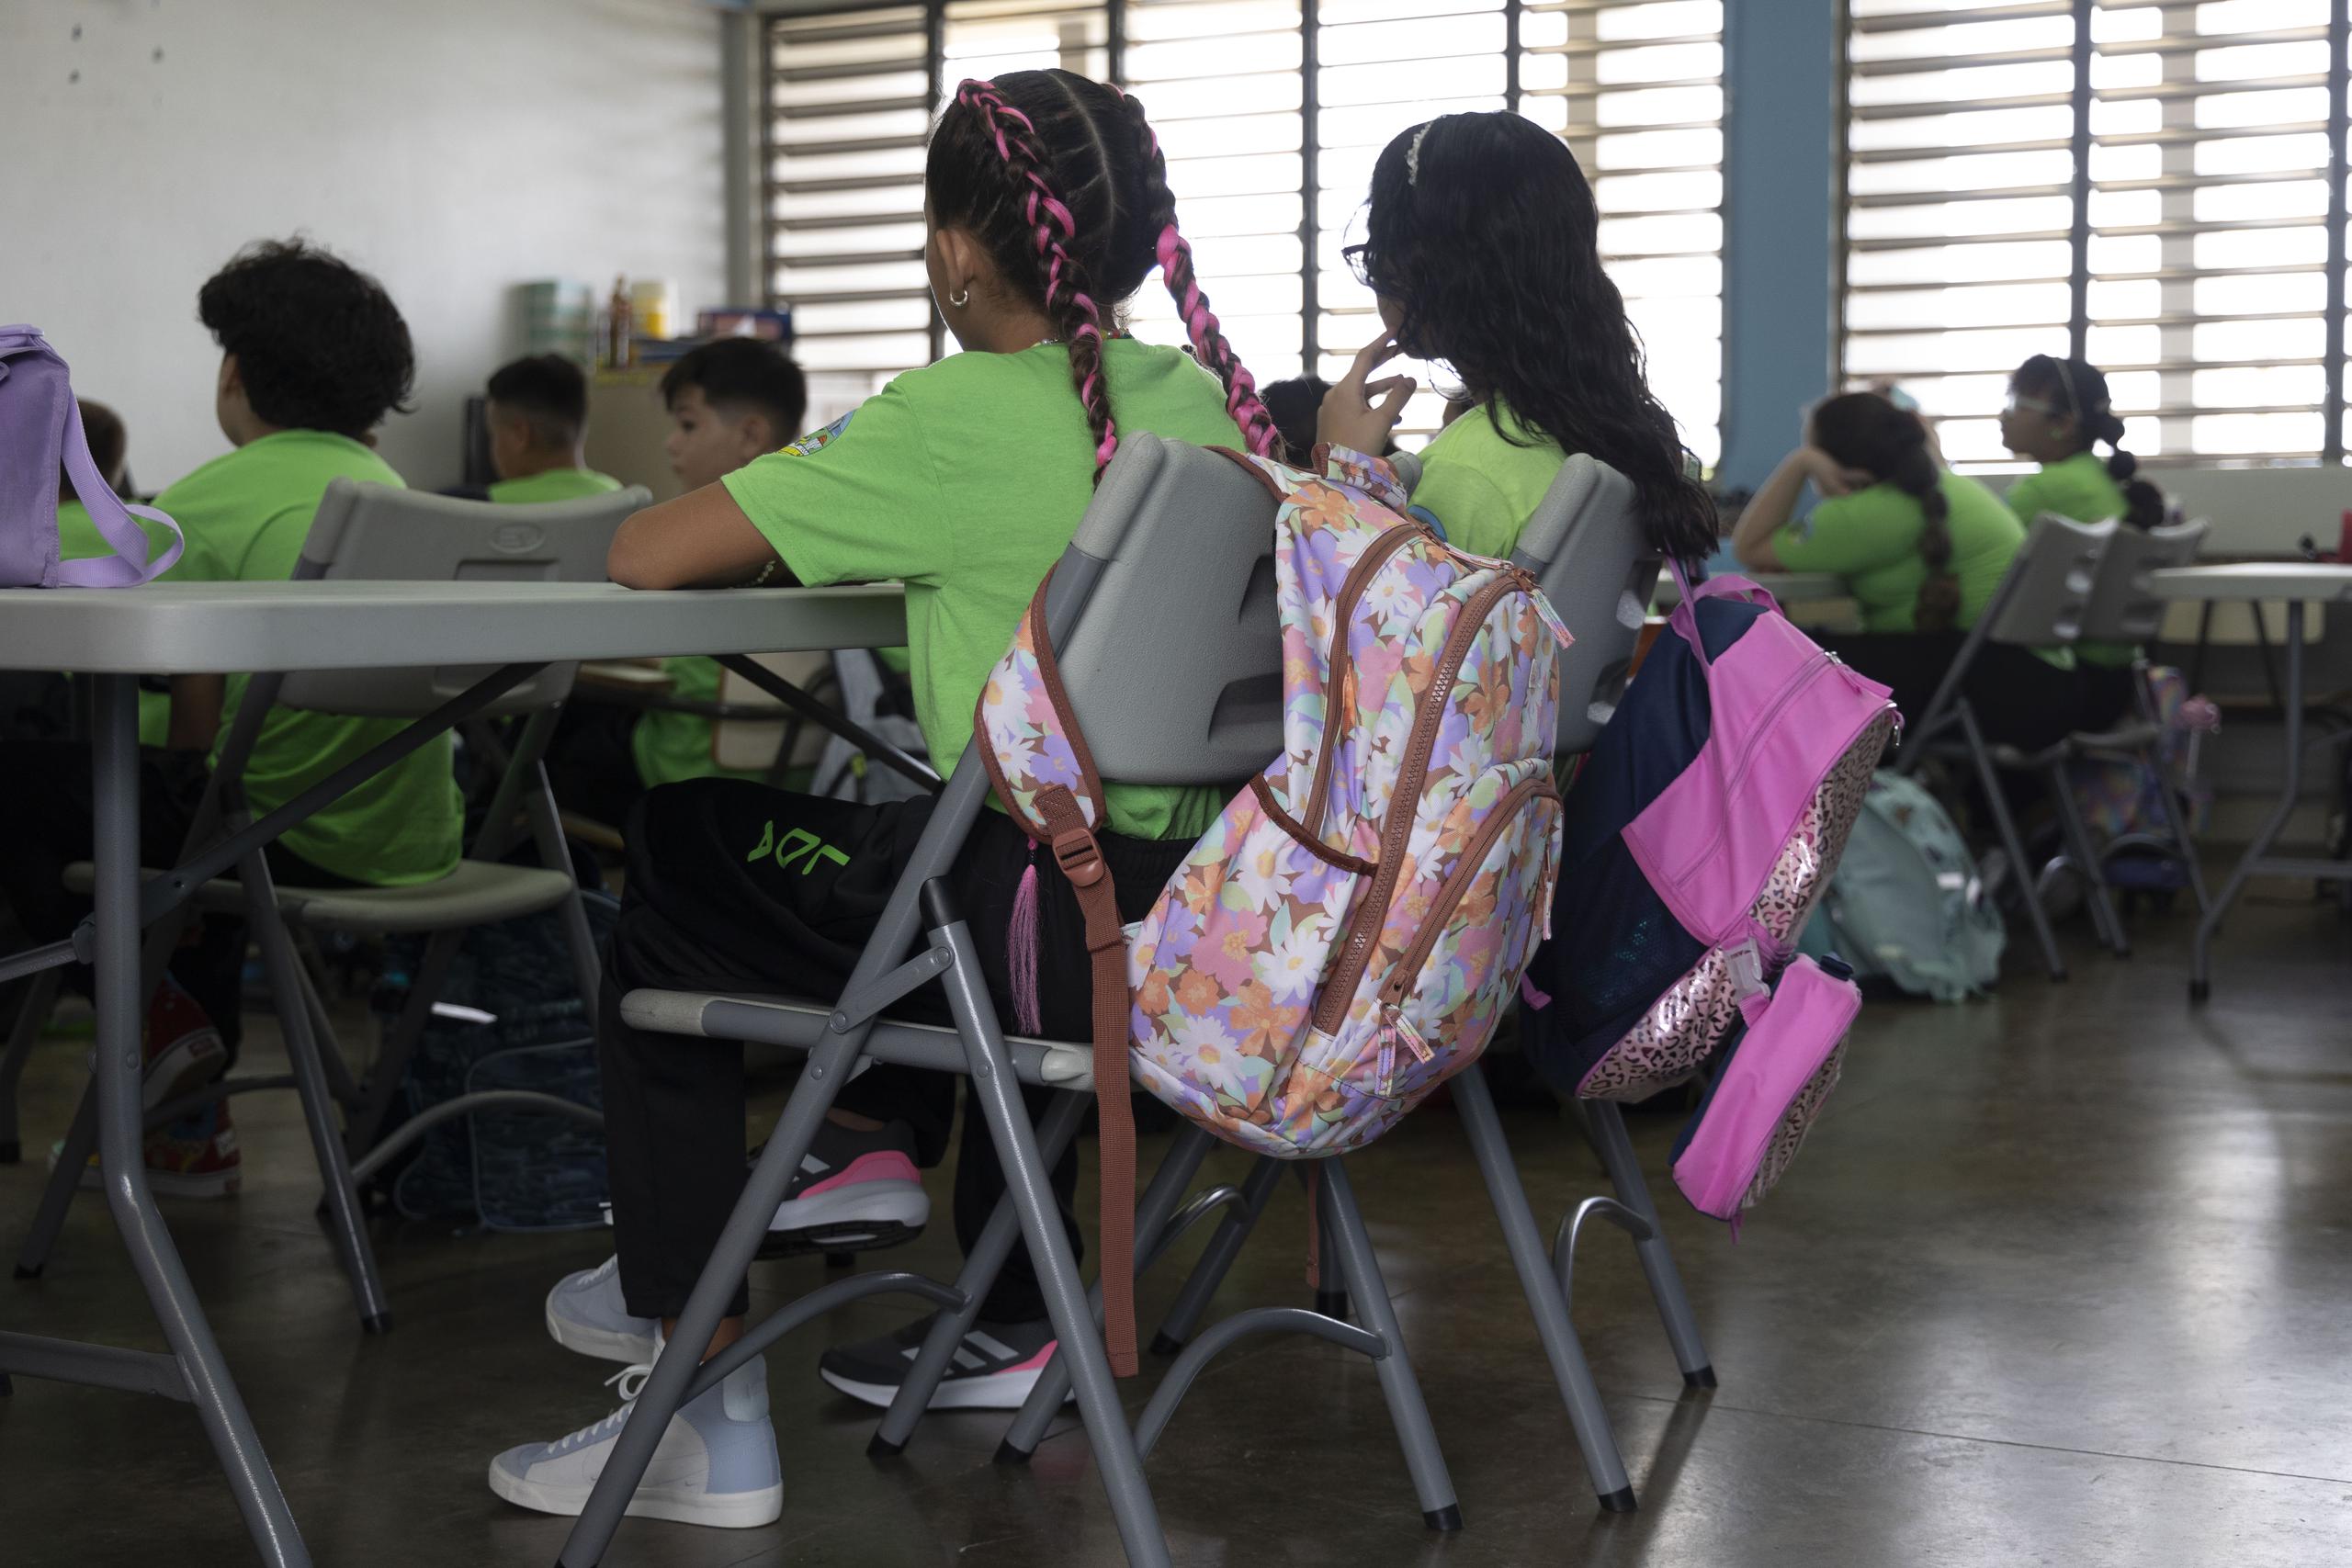 La secretaria designada y el gobernador estimaron que la asistencia de estudiantes a las 856 escuelas públicas rondaría el 70% de los 245,000 alumnos que se proyecta llegarán a las aulas.